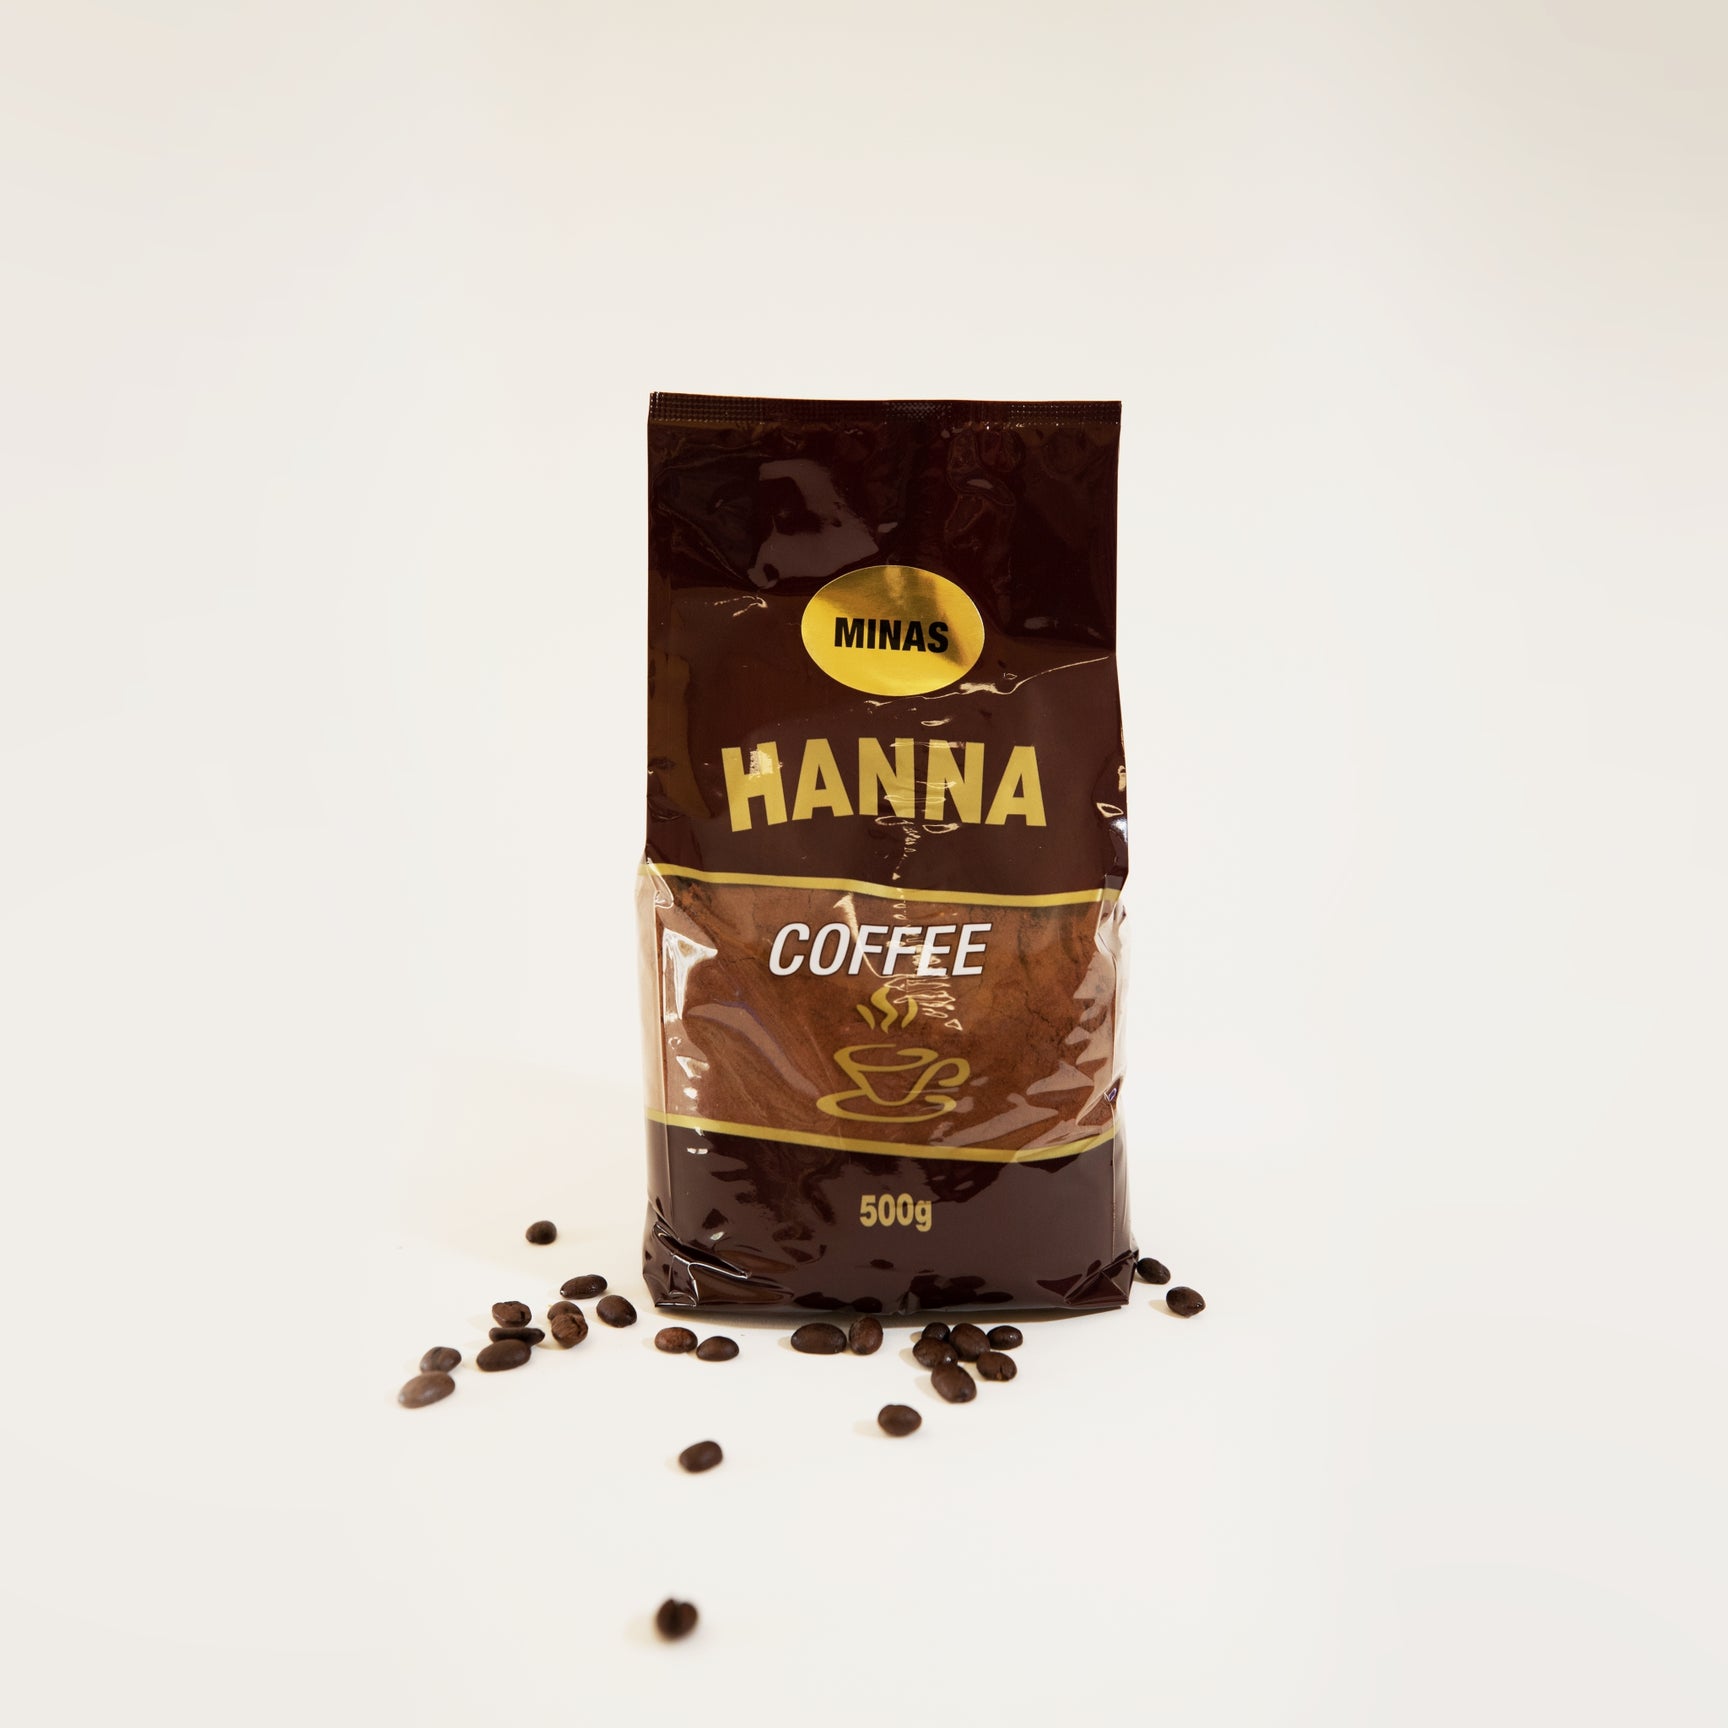 Ханна кофе. Coffee Minas.